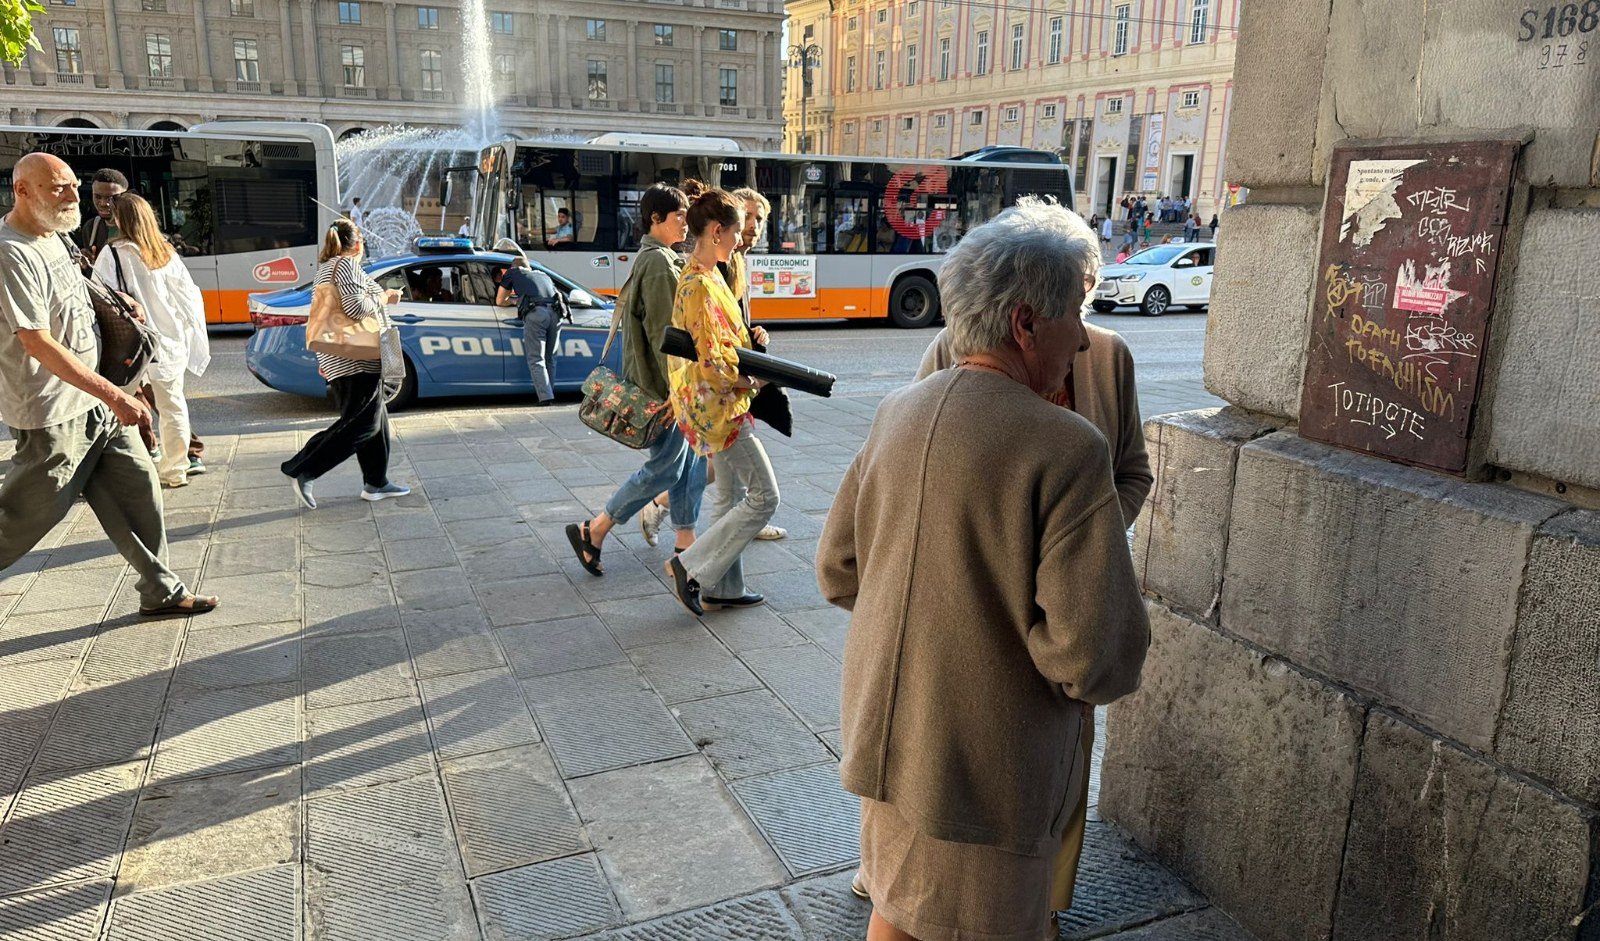 Rubano borsa ad anziana e fuggono: caccia ai ladri a De Ferrari